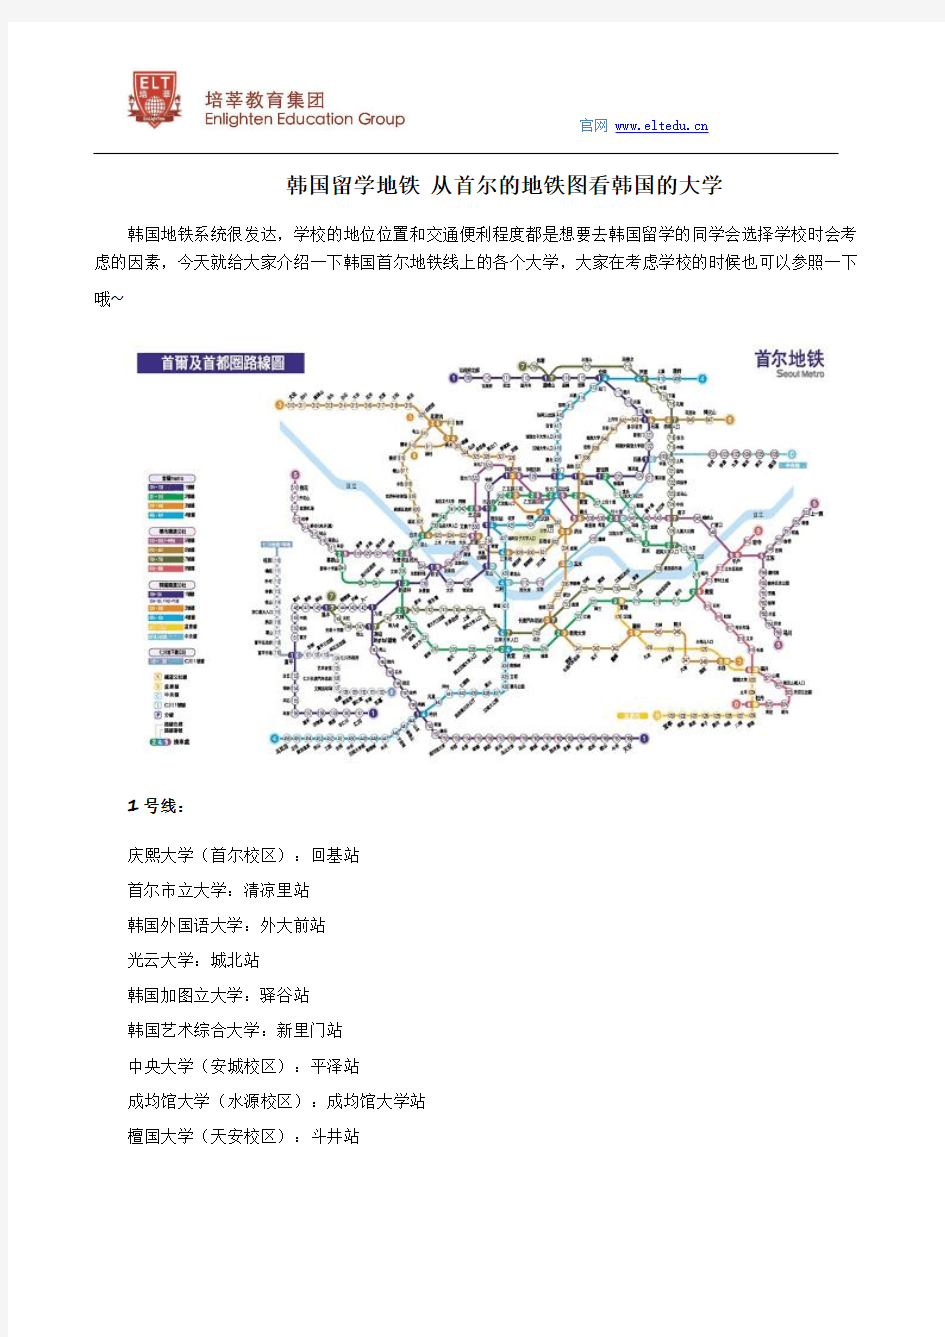 韩国留学地铁 从首尔的地铁图看韩国的大学